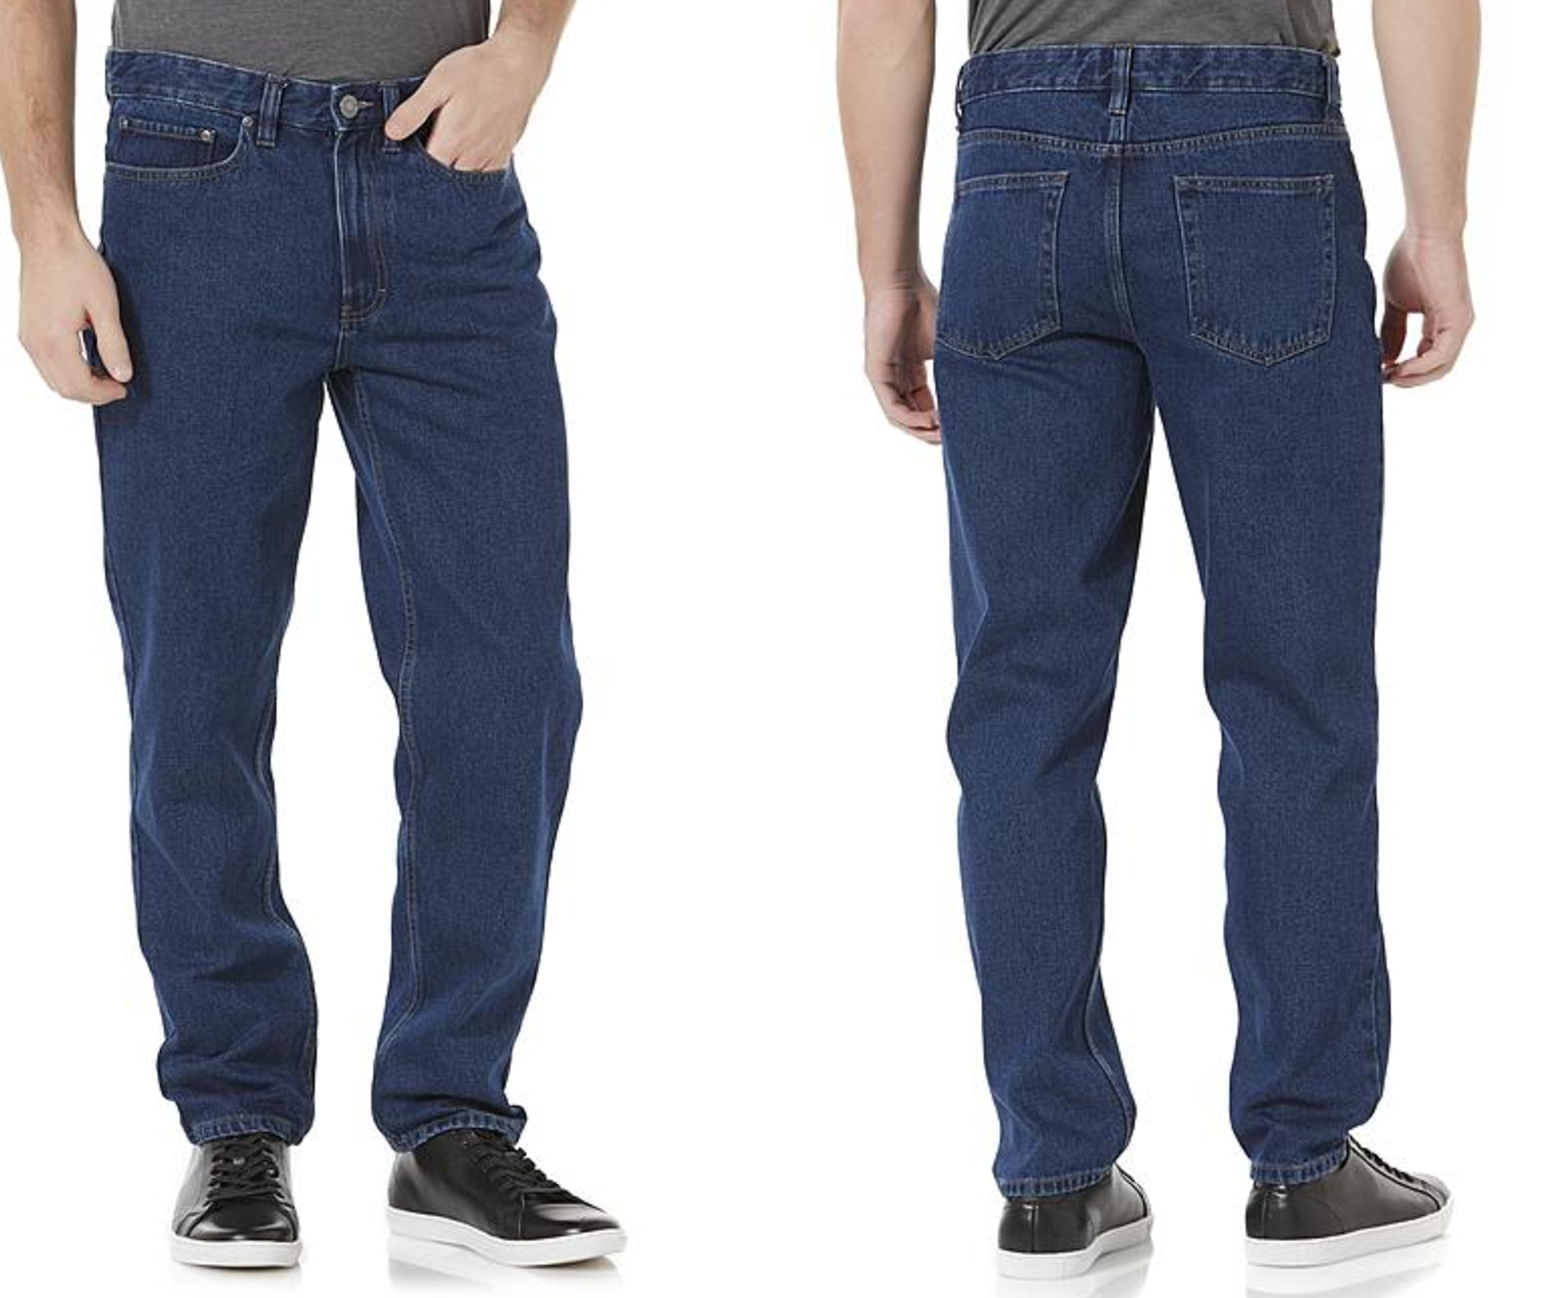 Kmart Jeans Blowout